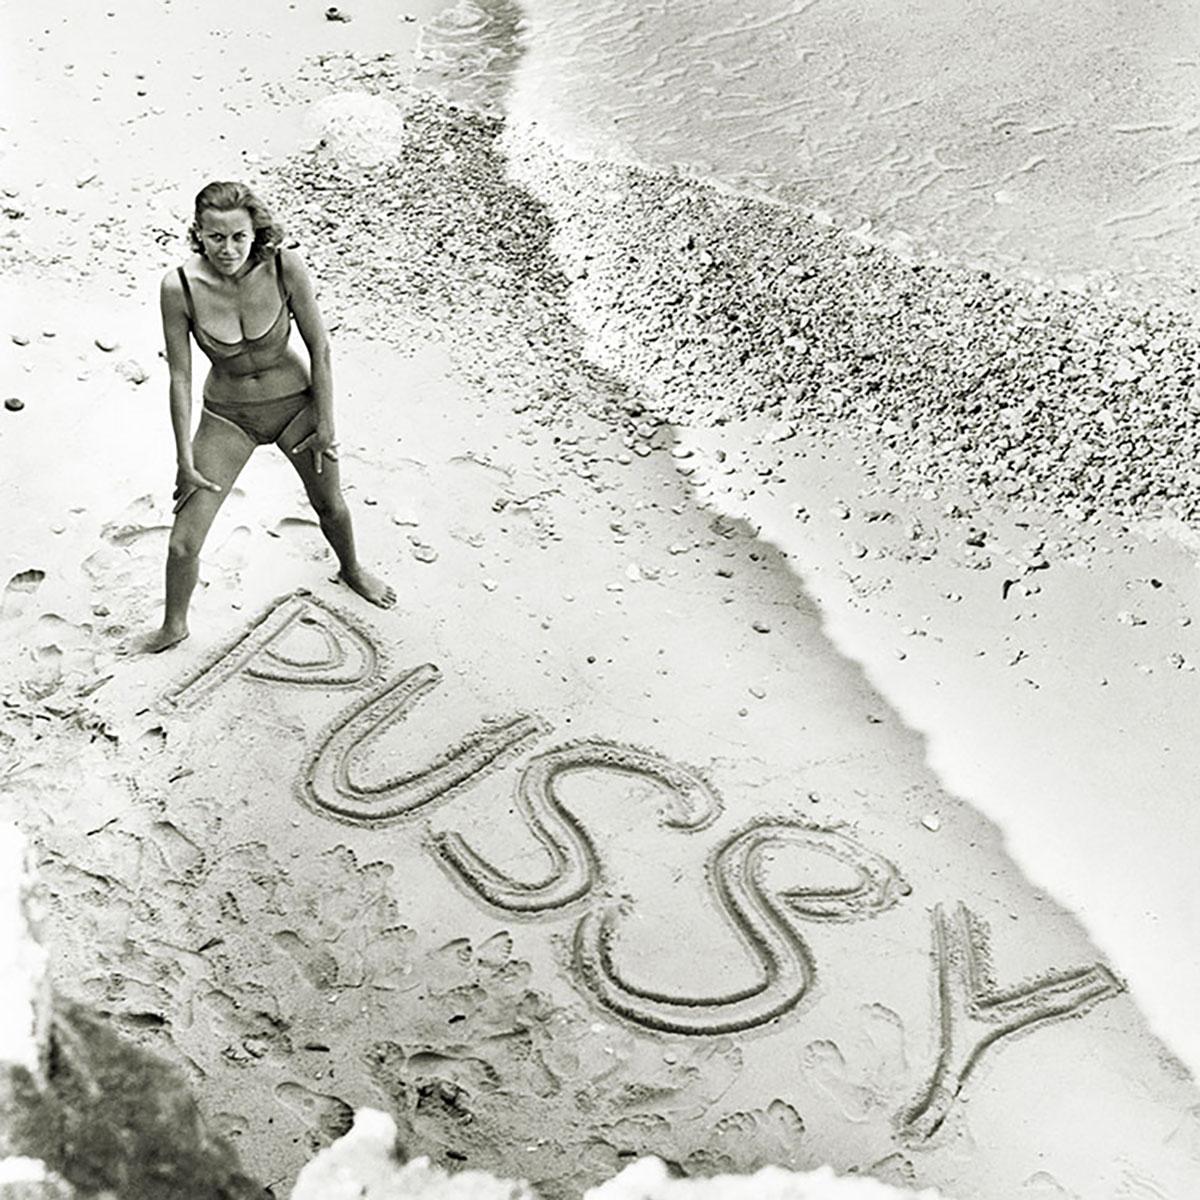 Sur une plage pour des images publicitaires du film de James Bond "Goldfinger" de 1964, dans lequel Blackman incarne Pussy Galore.	

Tirages d'art signés et numérotés à vie de Terry O'Neill provenant de la succession de Terry O'Neill

Édition à vie